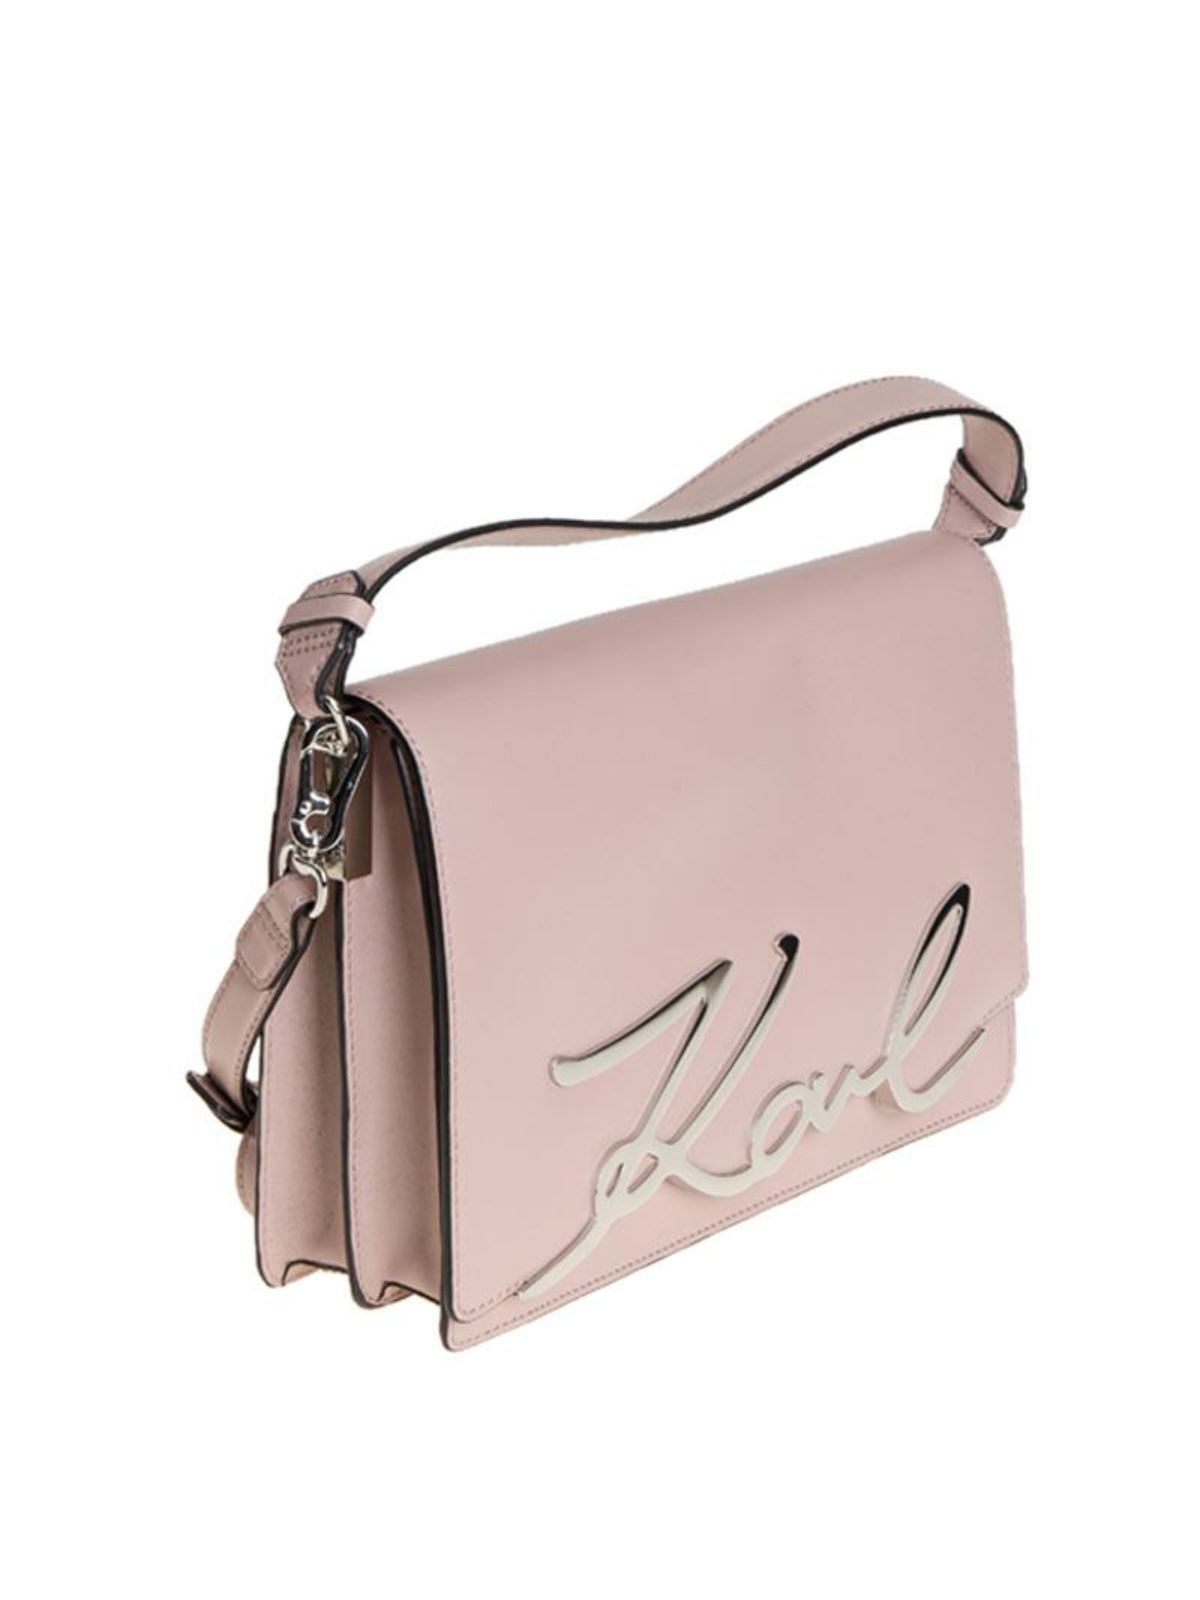 Buy Karl Lagerfeld Bag ikonik Sling Shoulder Bag With OG Bag (J1009)